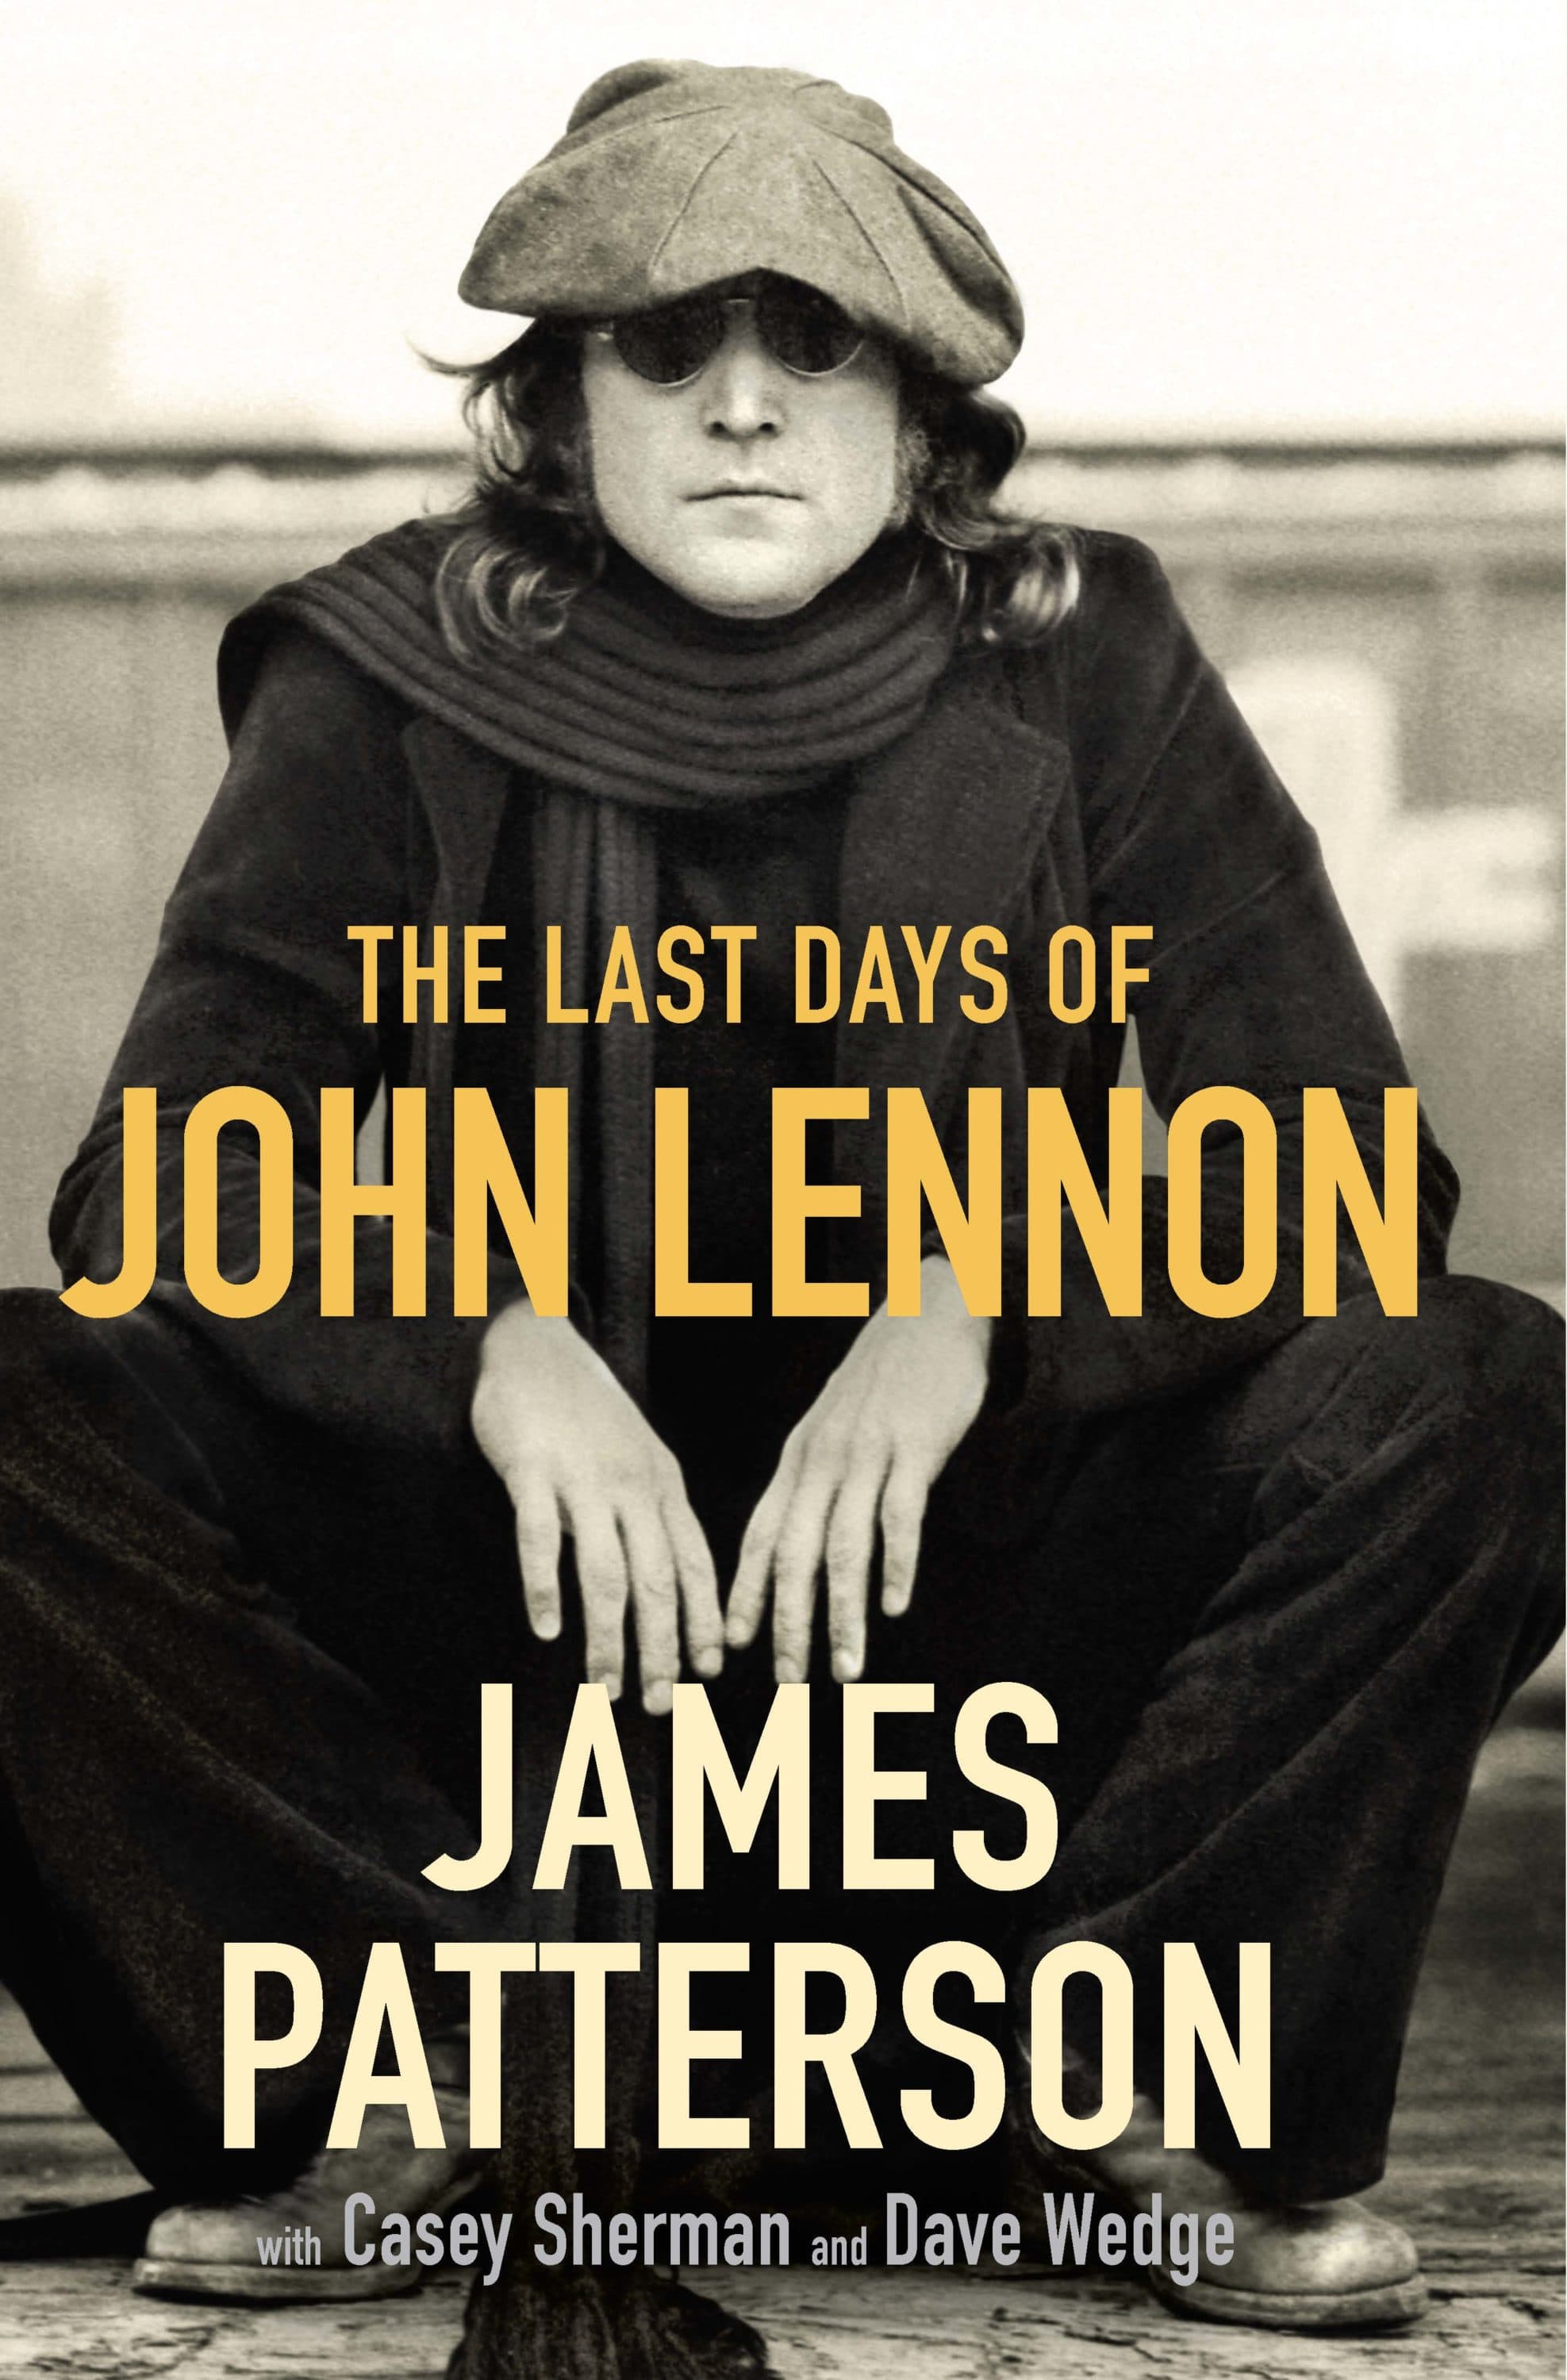 John Lennon's First Album, History